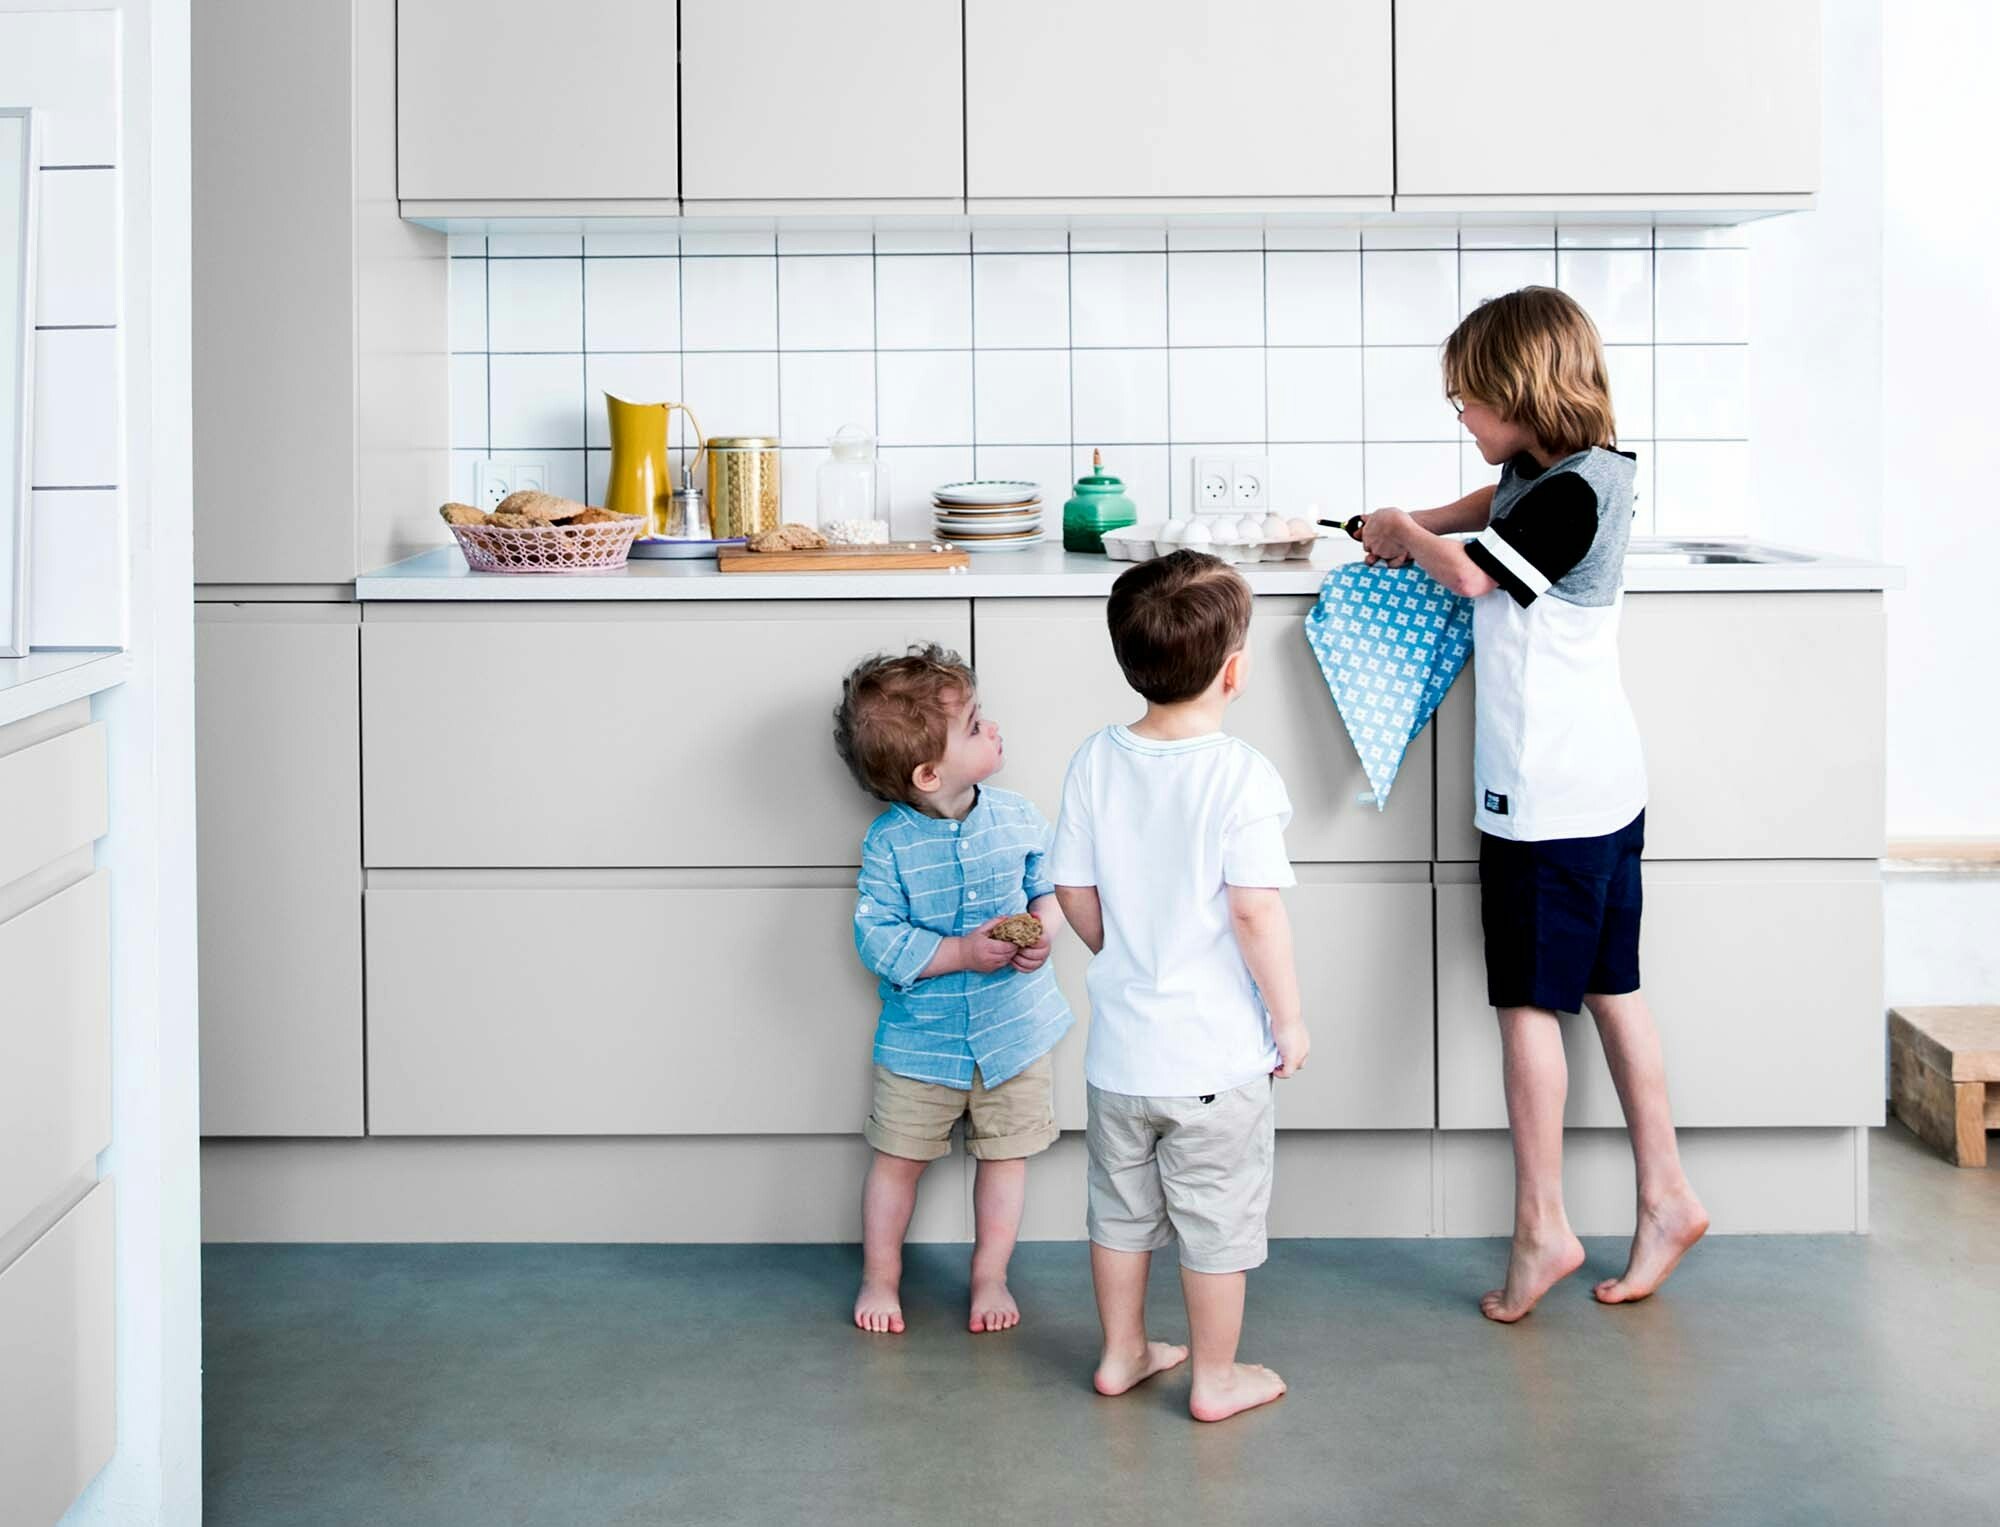 5 råd til at få en god oplevelse med børnene i køkkenet